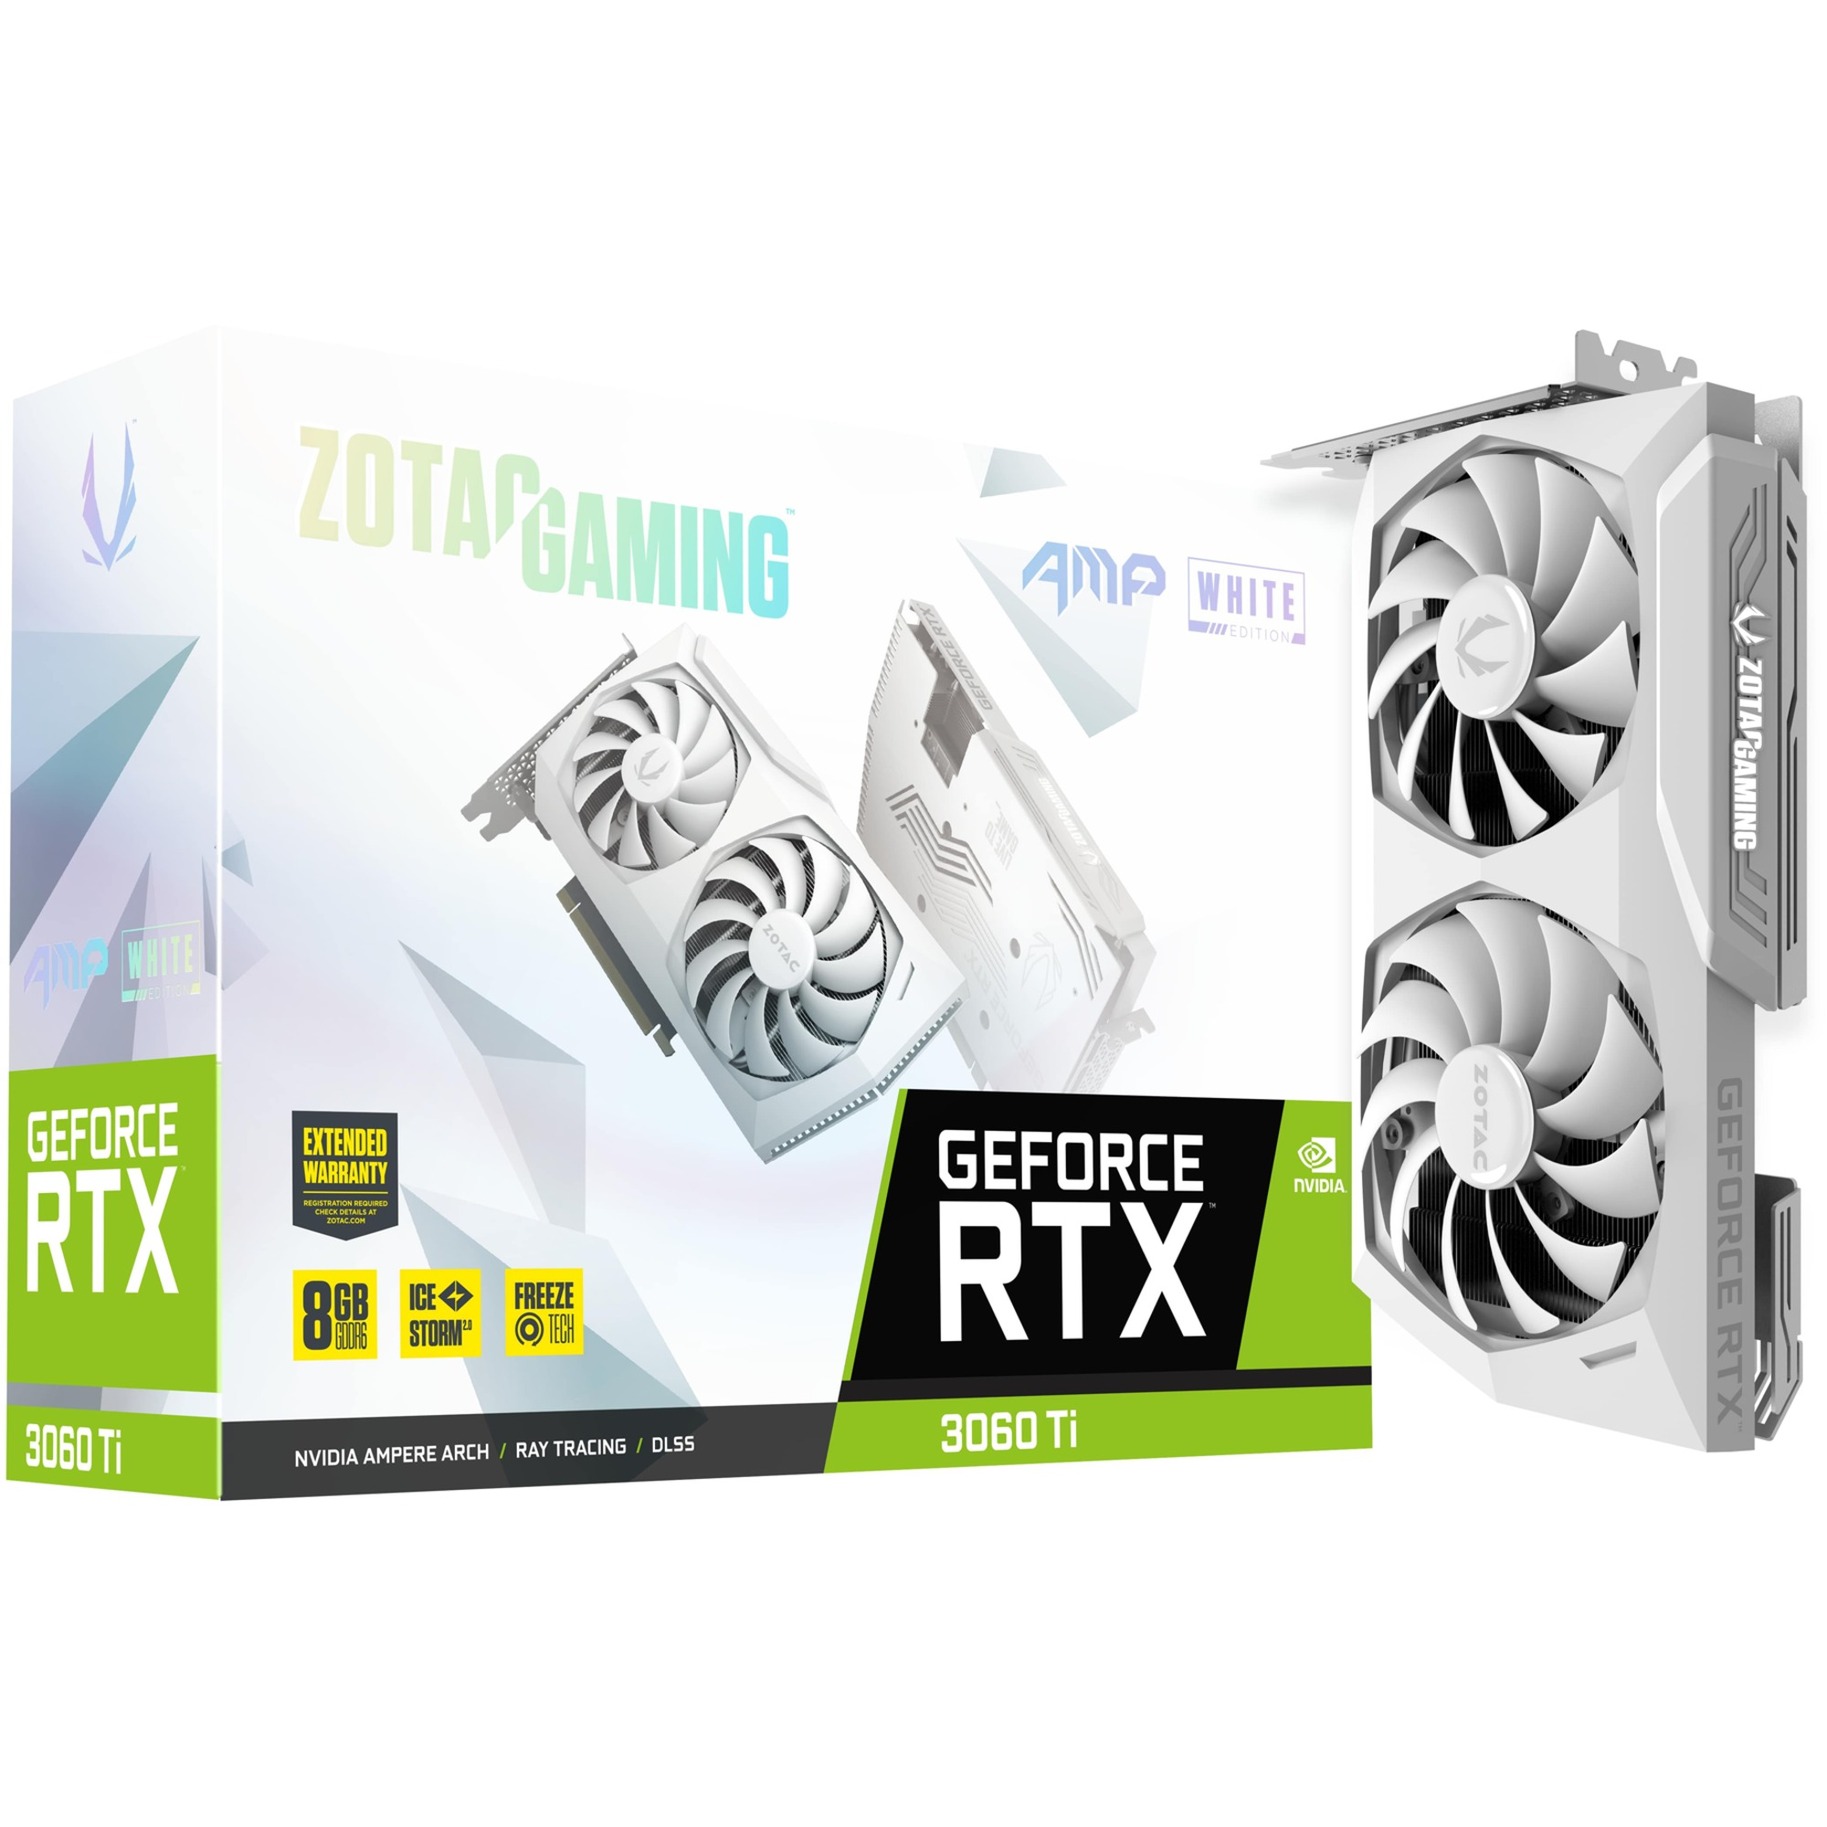 Image of Alternate - GeForce RTX 3060 Ti AMP LHR WHITE, Grafikkarte online einkaufen bei Alternate